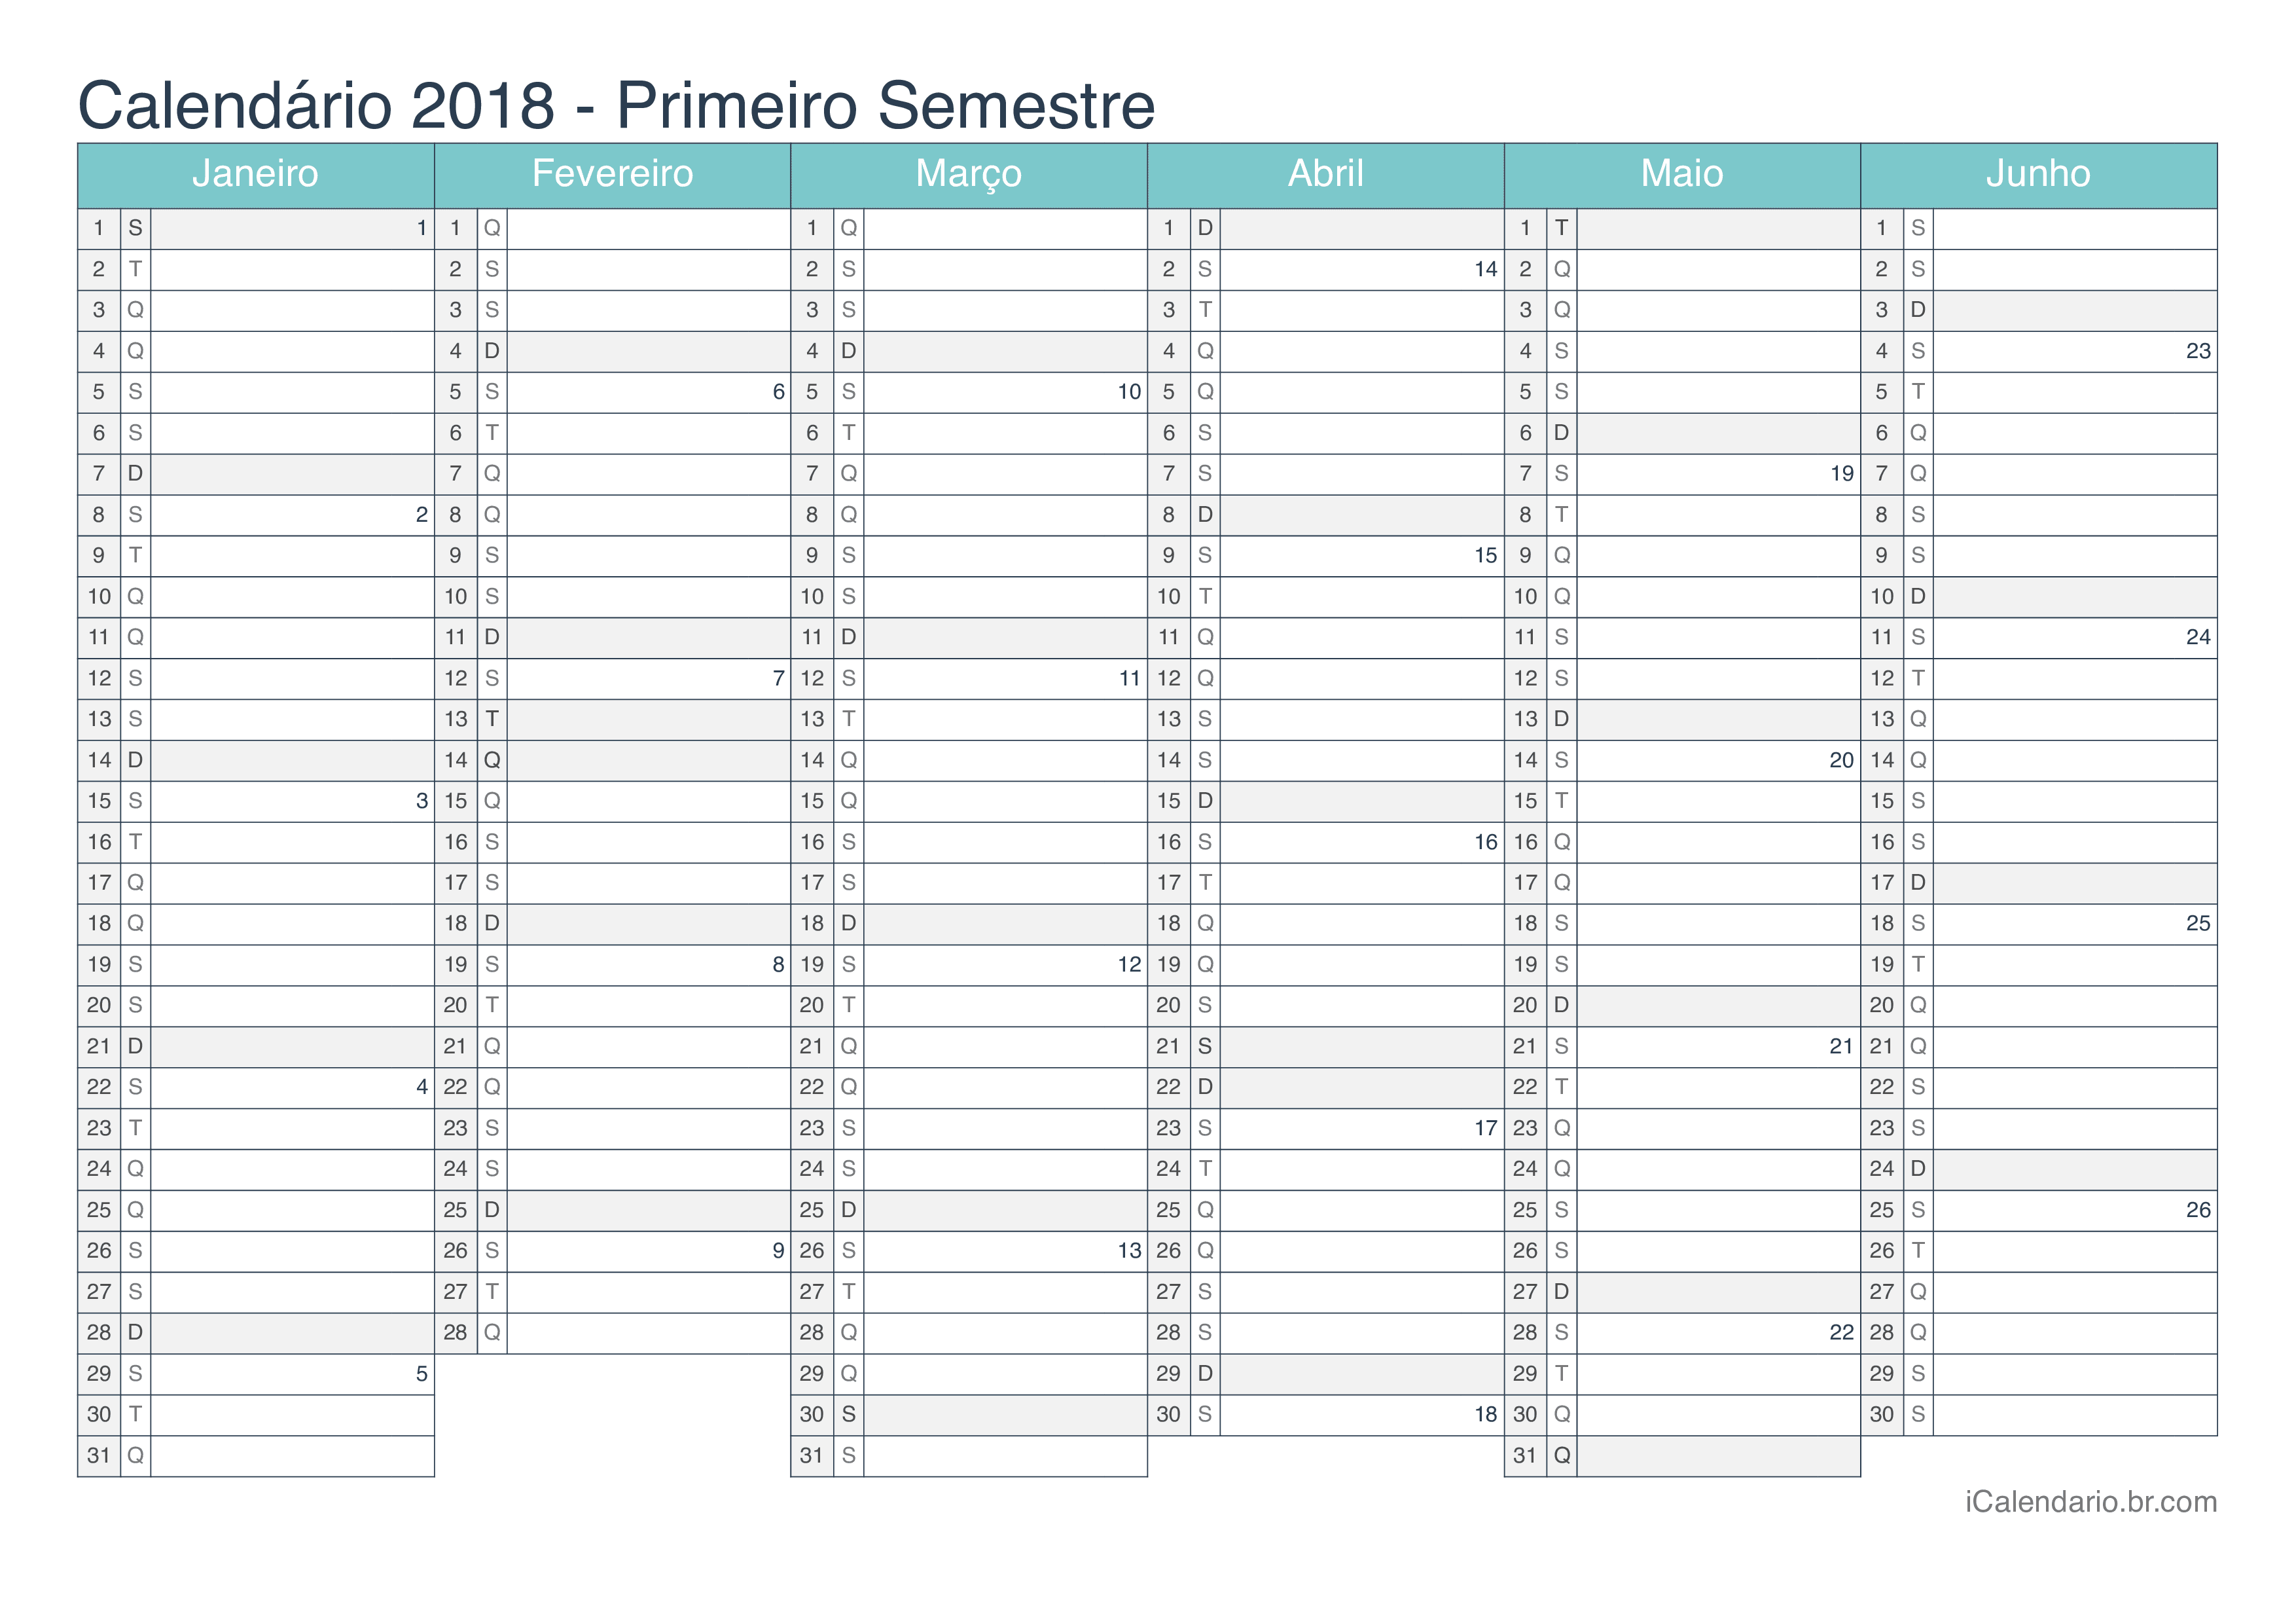 Calendário por semestre com números da semana 2018 - Turquesa